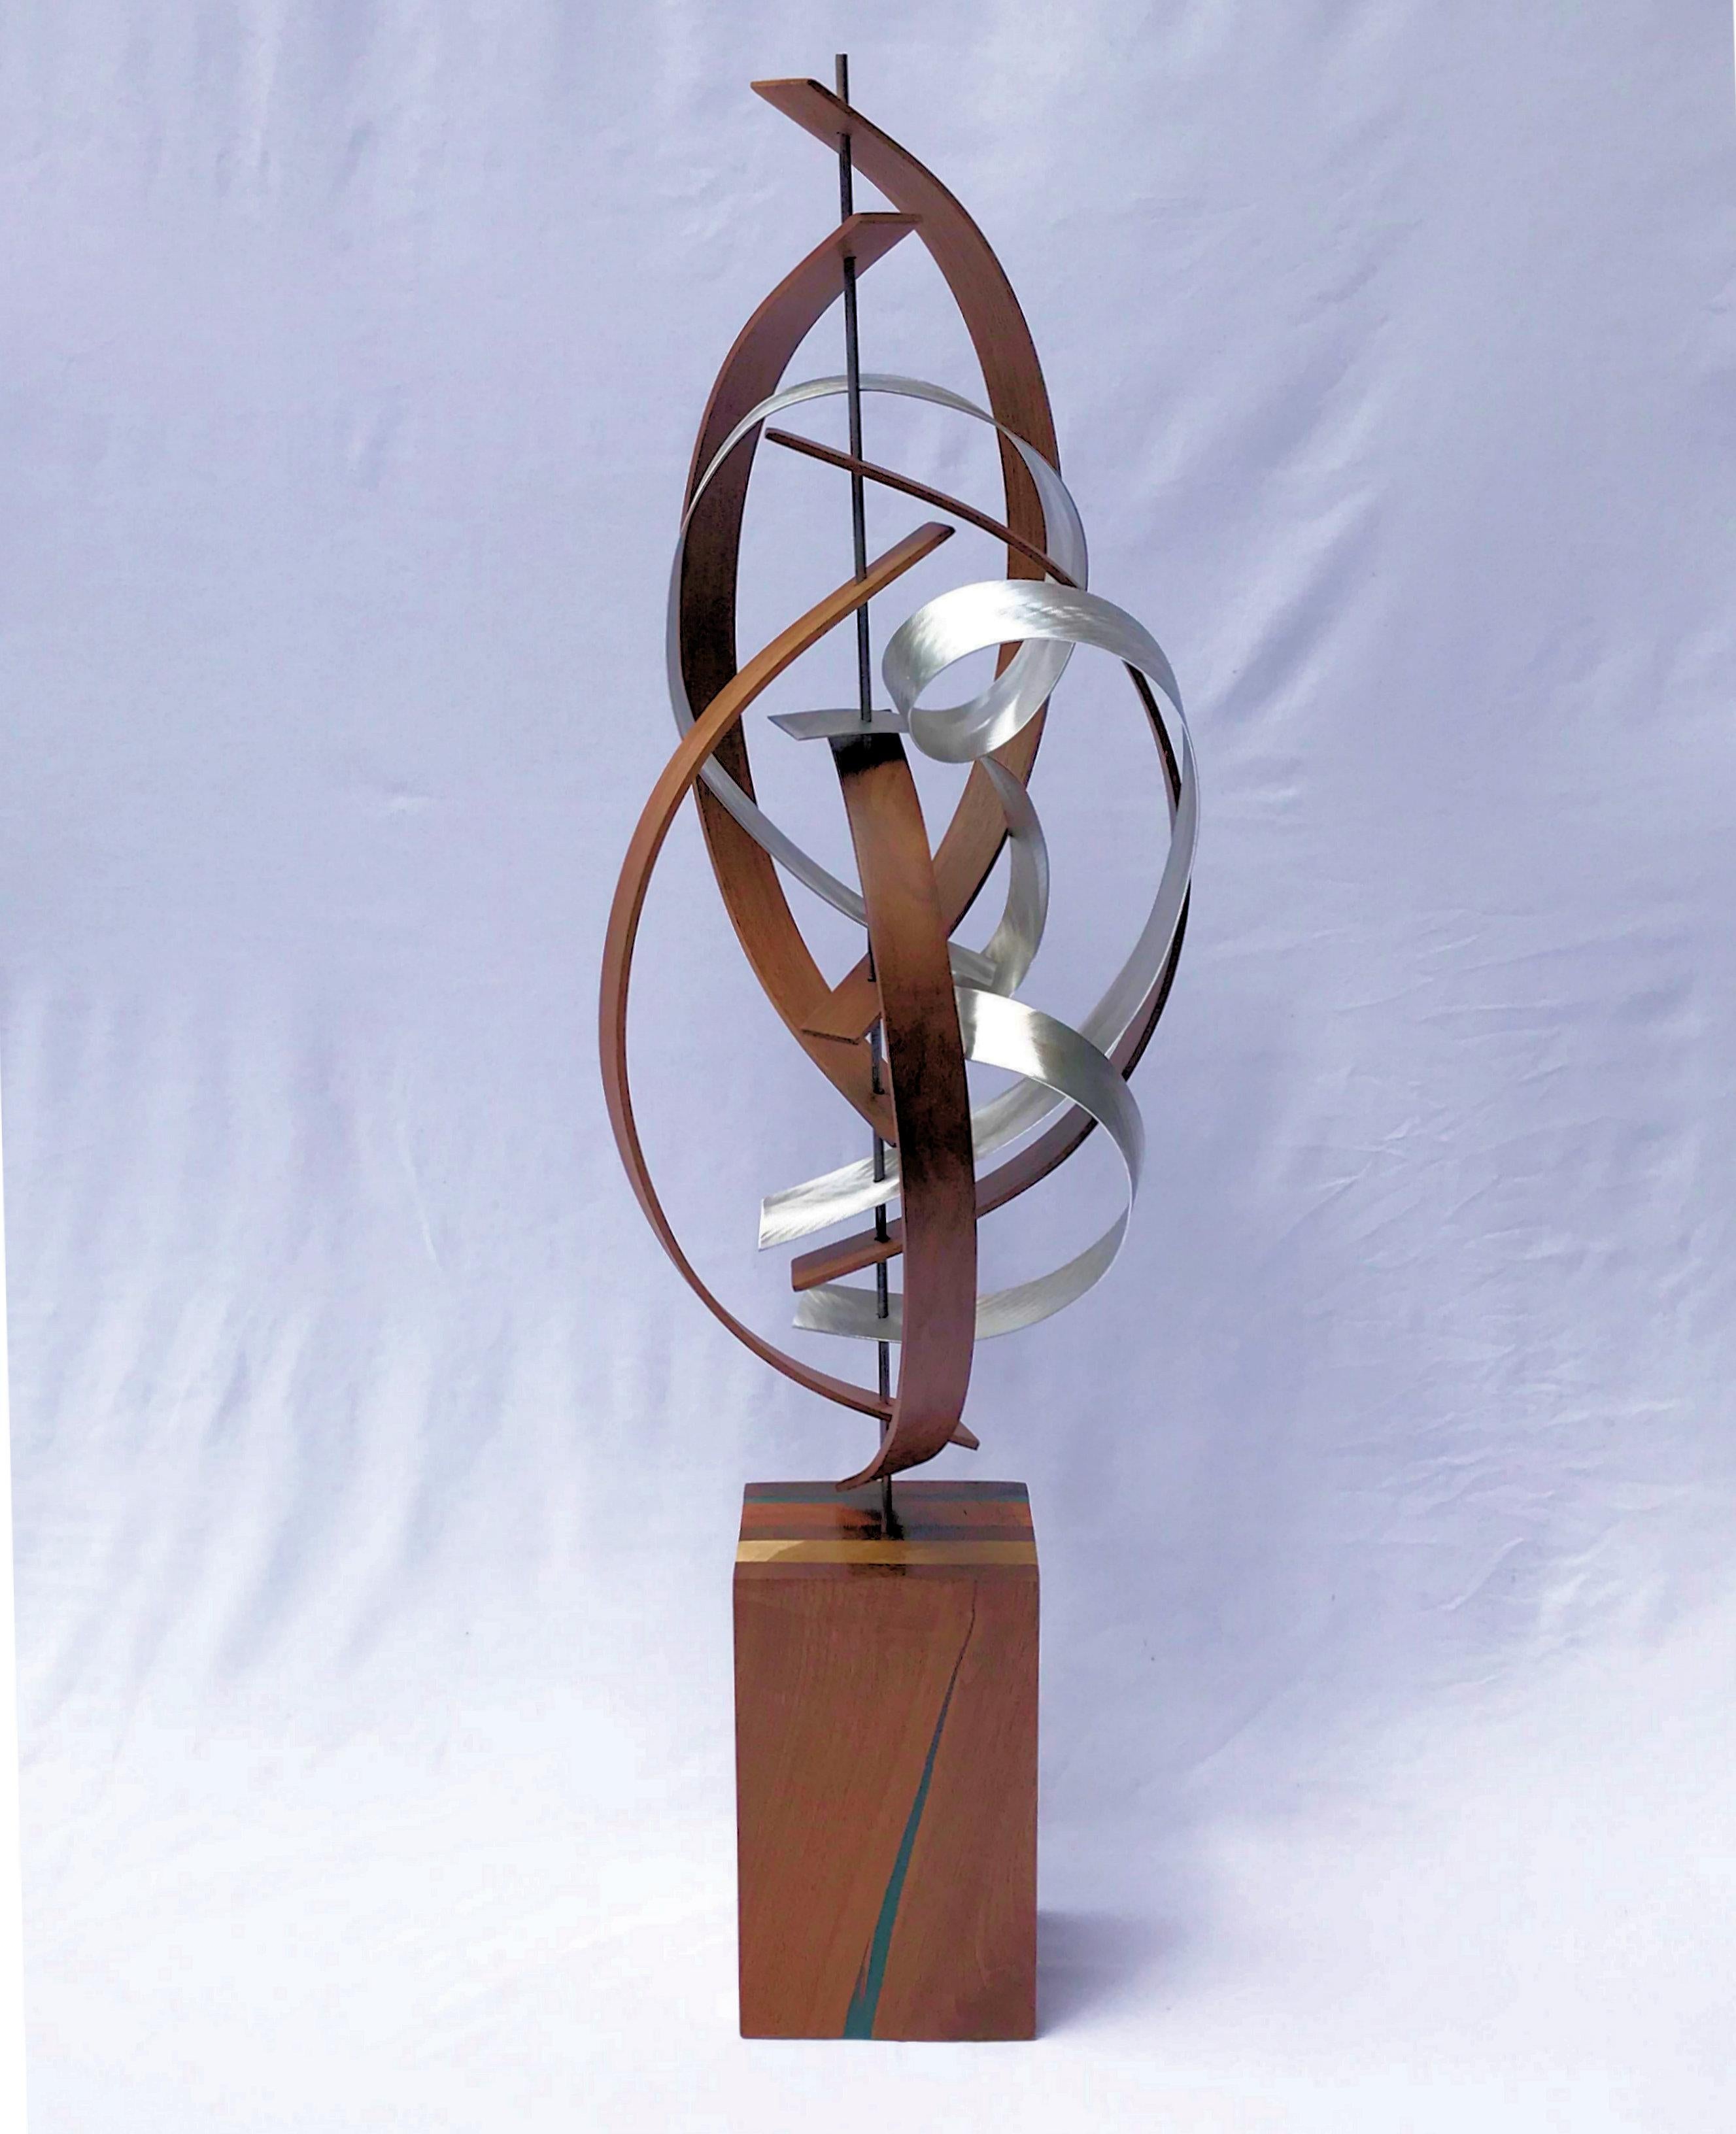 Jeff Linenkugel Abstract Sculpture - Mid Century Modern Wood Metal Free-Standing Sculpture Original Contemporary Art 